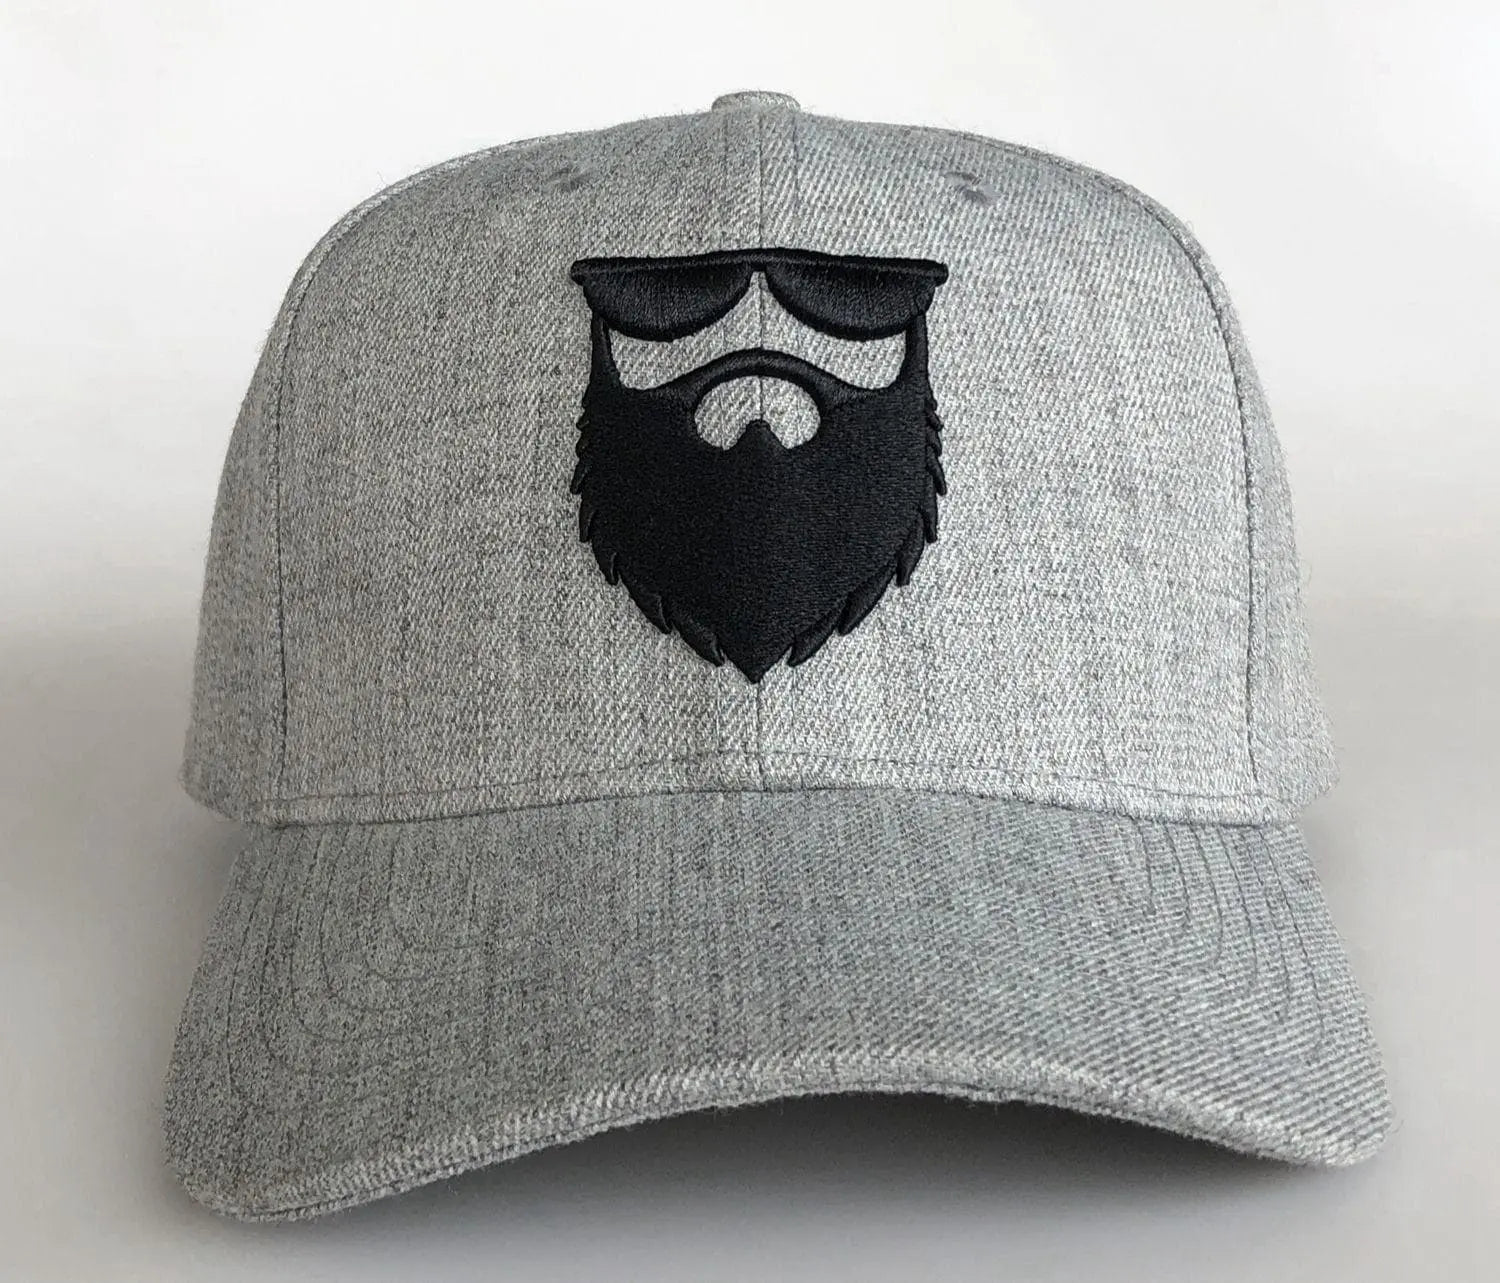 OG Beard Logo Snapback - Heather Grey Curved Visor|Hat